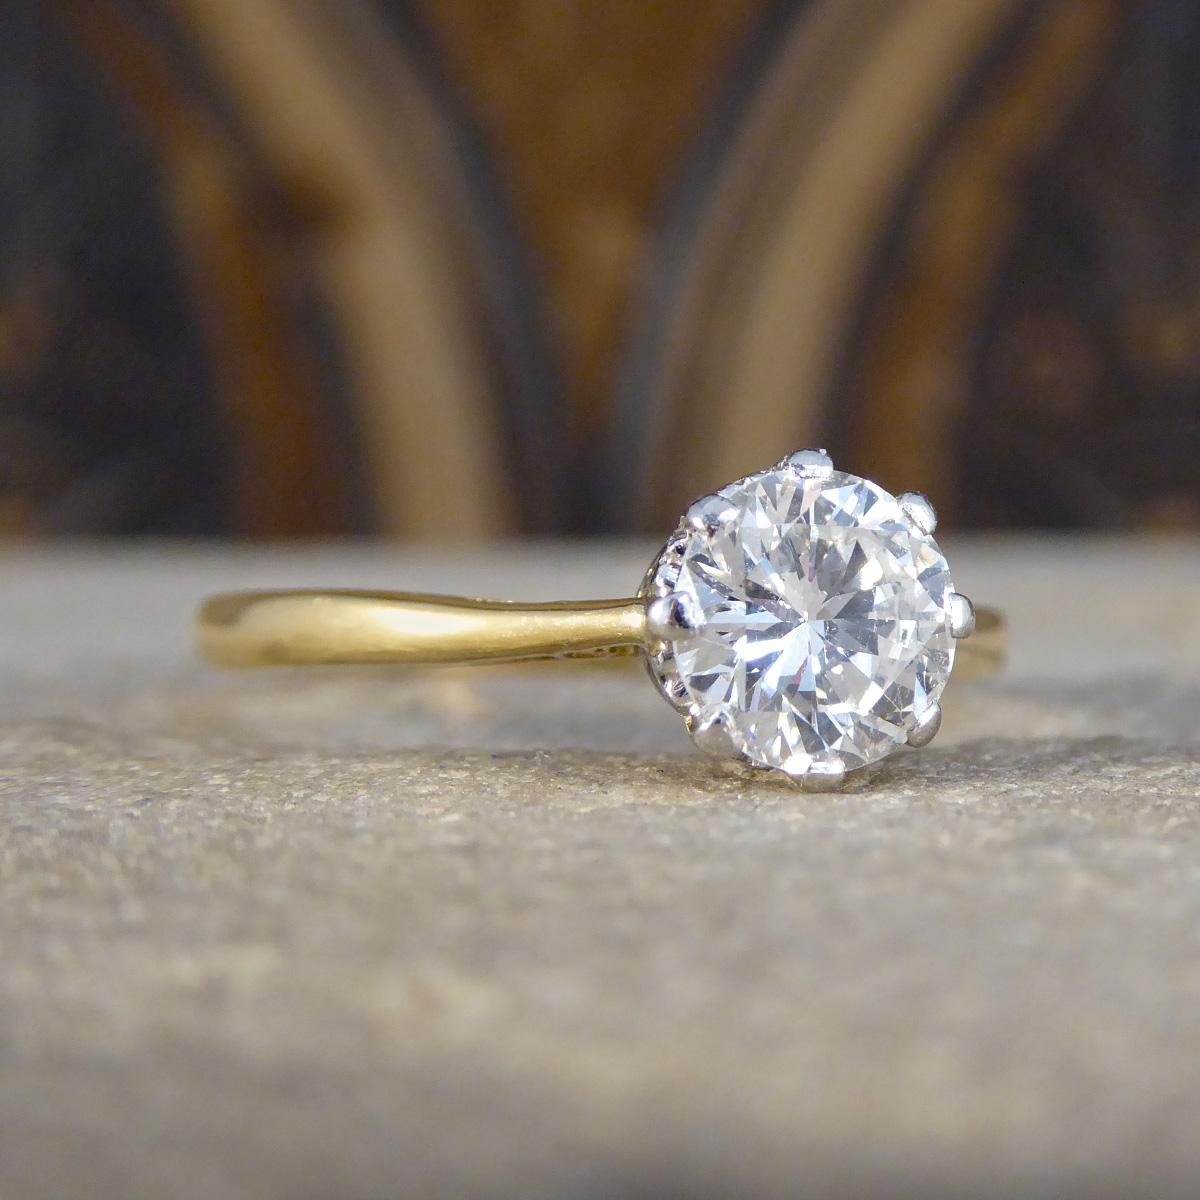 Remontez le temps avec notre bague de fiançailles solitaire en diamant de 1,00ct des années 1920, un trésor qui allie l'élégance d'antan à une beauté intemporelle. Réalisée en or jaune 18ct et couronnée d'une monture en platine, cette pièce exquise